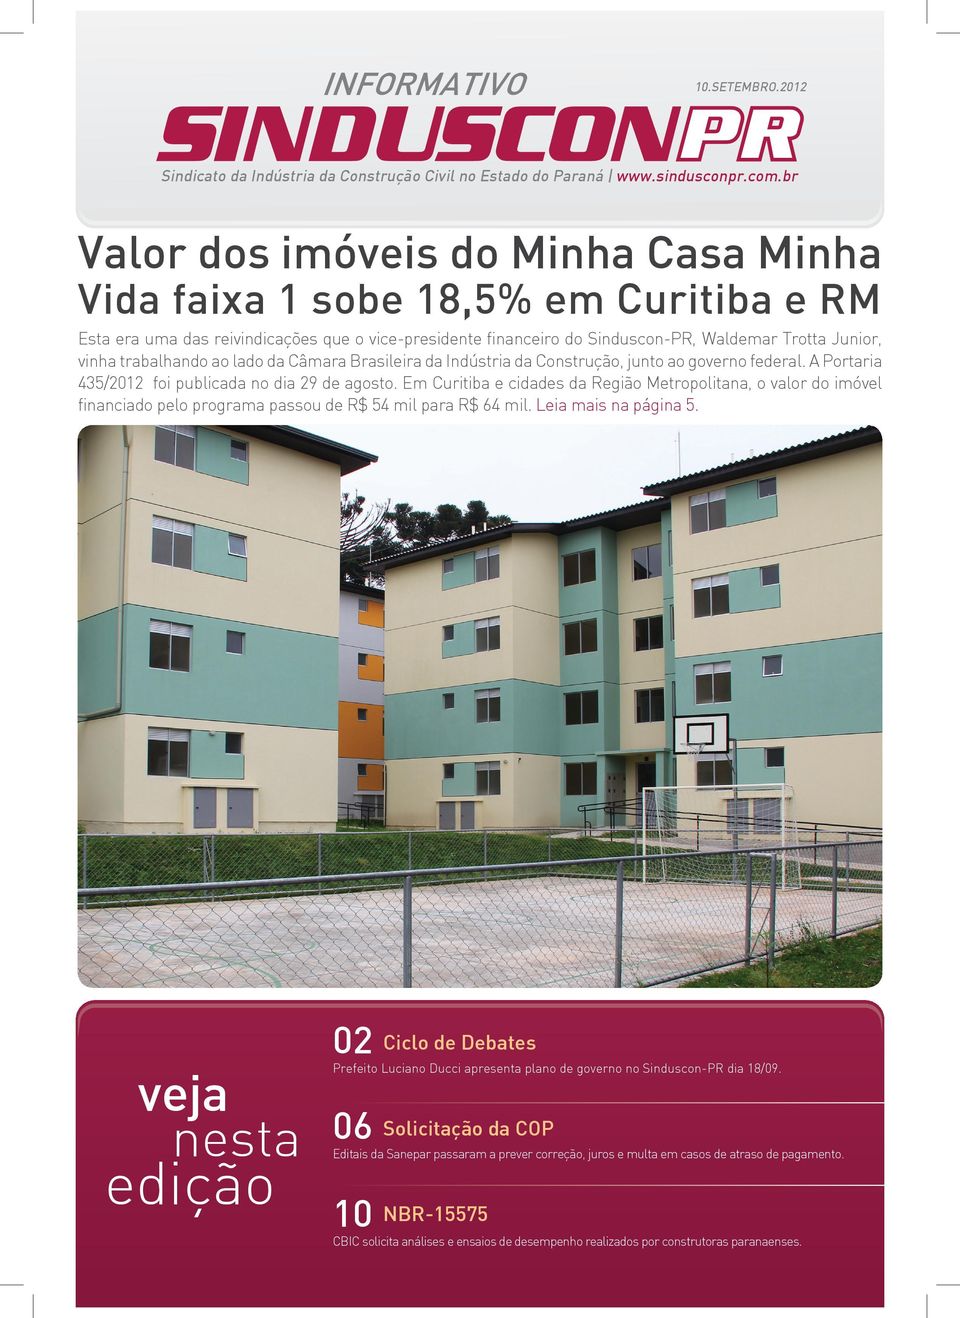 trabalhando ao lado da Câmara Brasileira da Indústria da Construção, junto ao governo federal. A Portaria 435/2012 foi publicada no dia 29 de agosto.